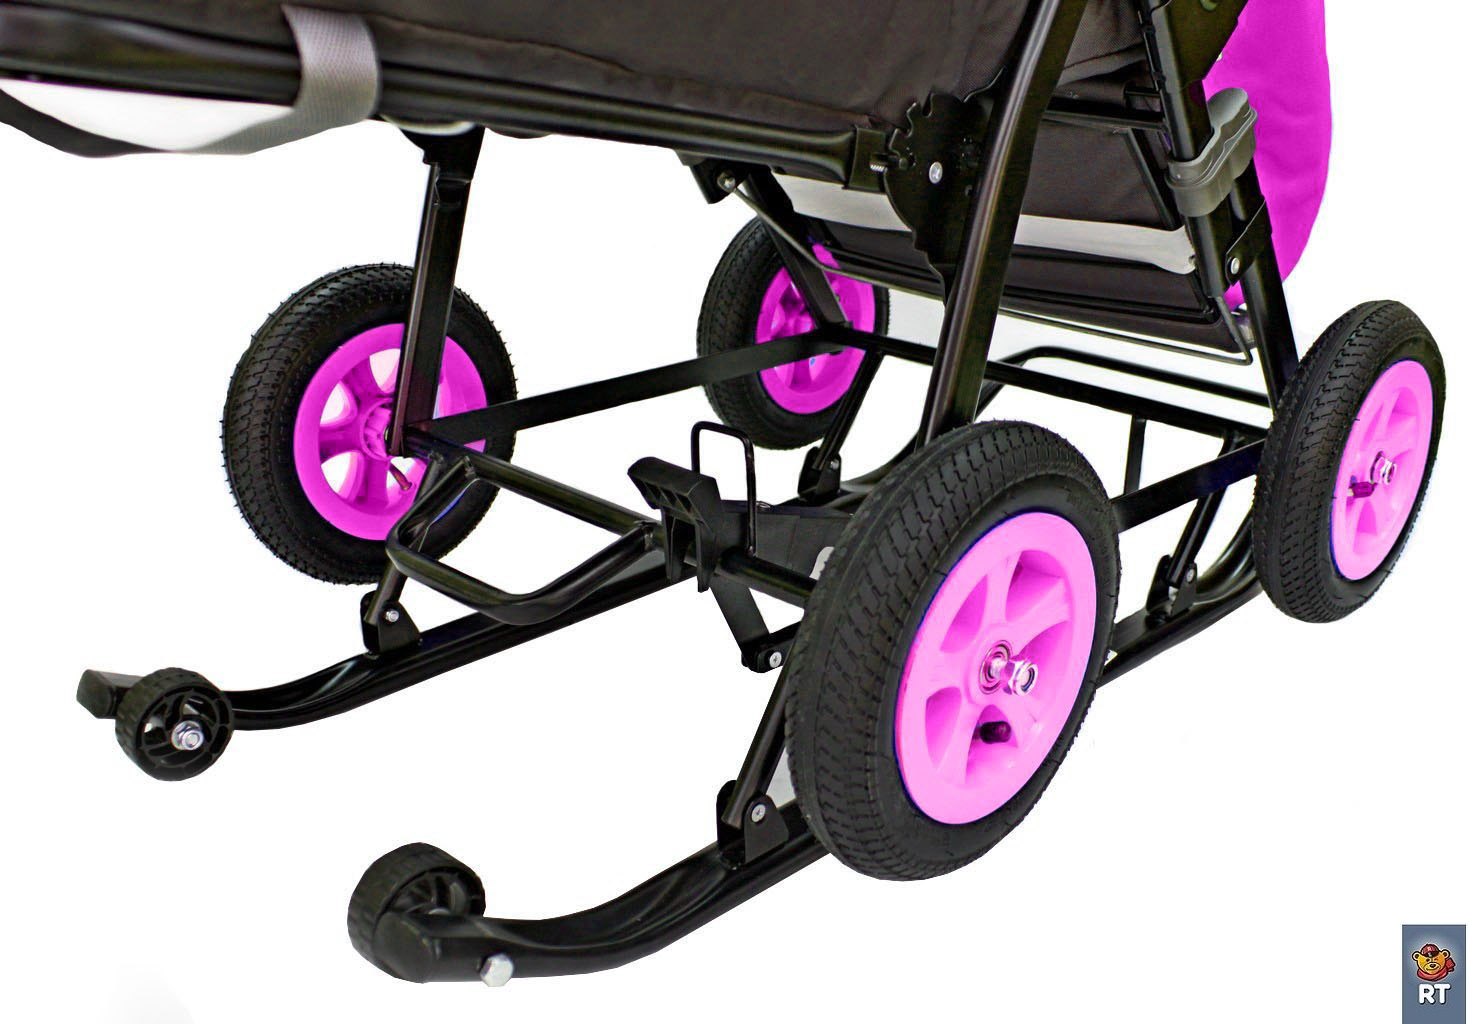 Санки-коляска Snow Galaxy City-1-1 - Мишка со звездой на розовом, на больших надувных колесах, сумка, варежки  